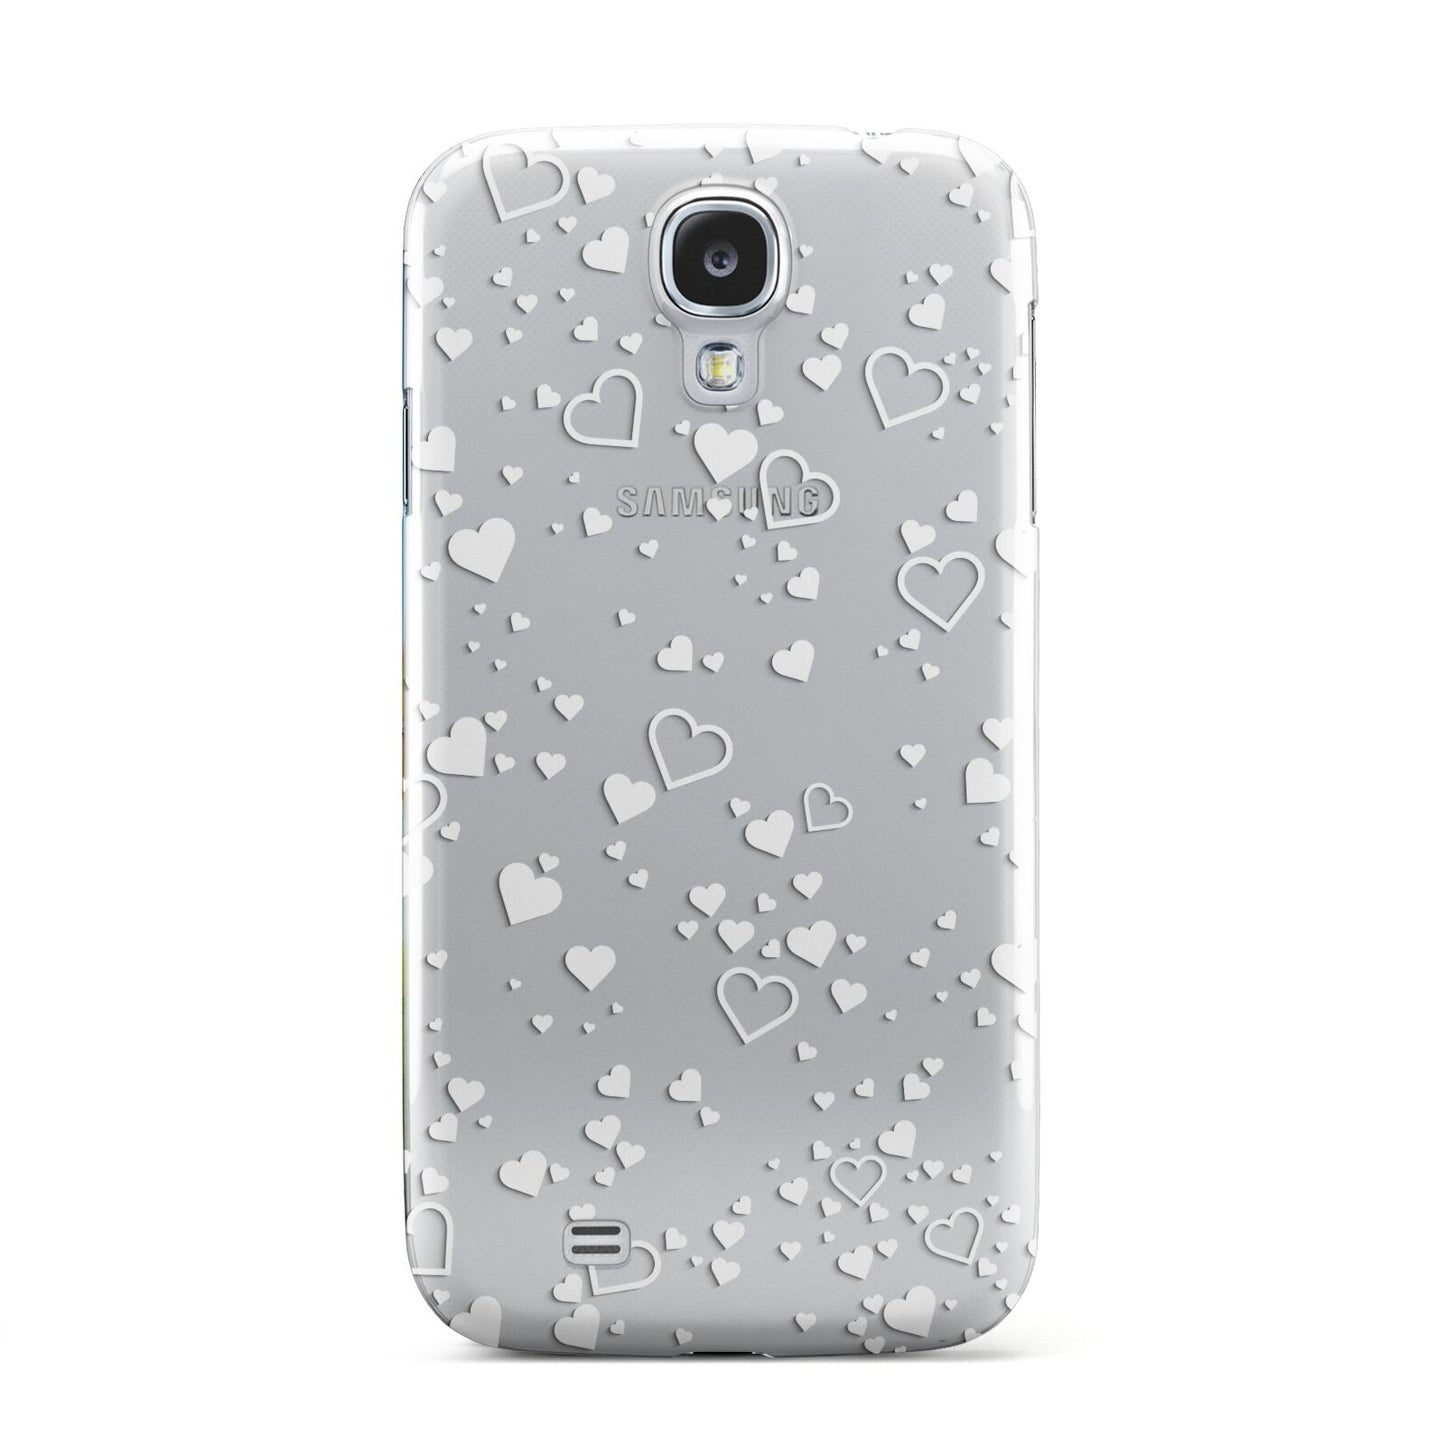 White Heart Samsung Galaxy S4 Case